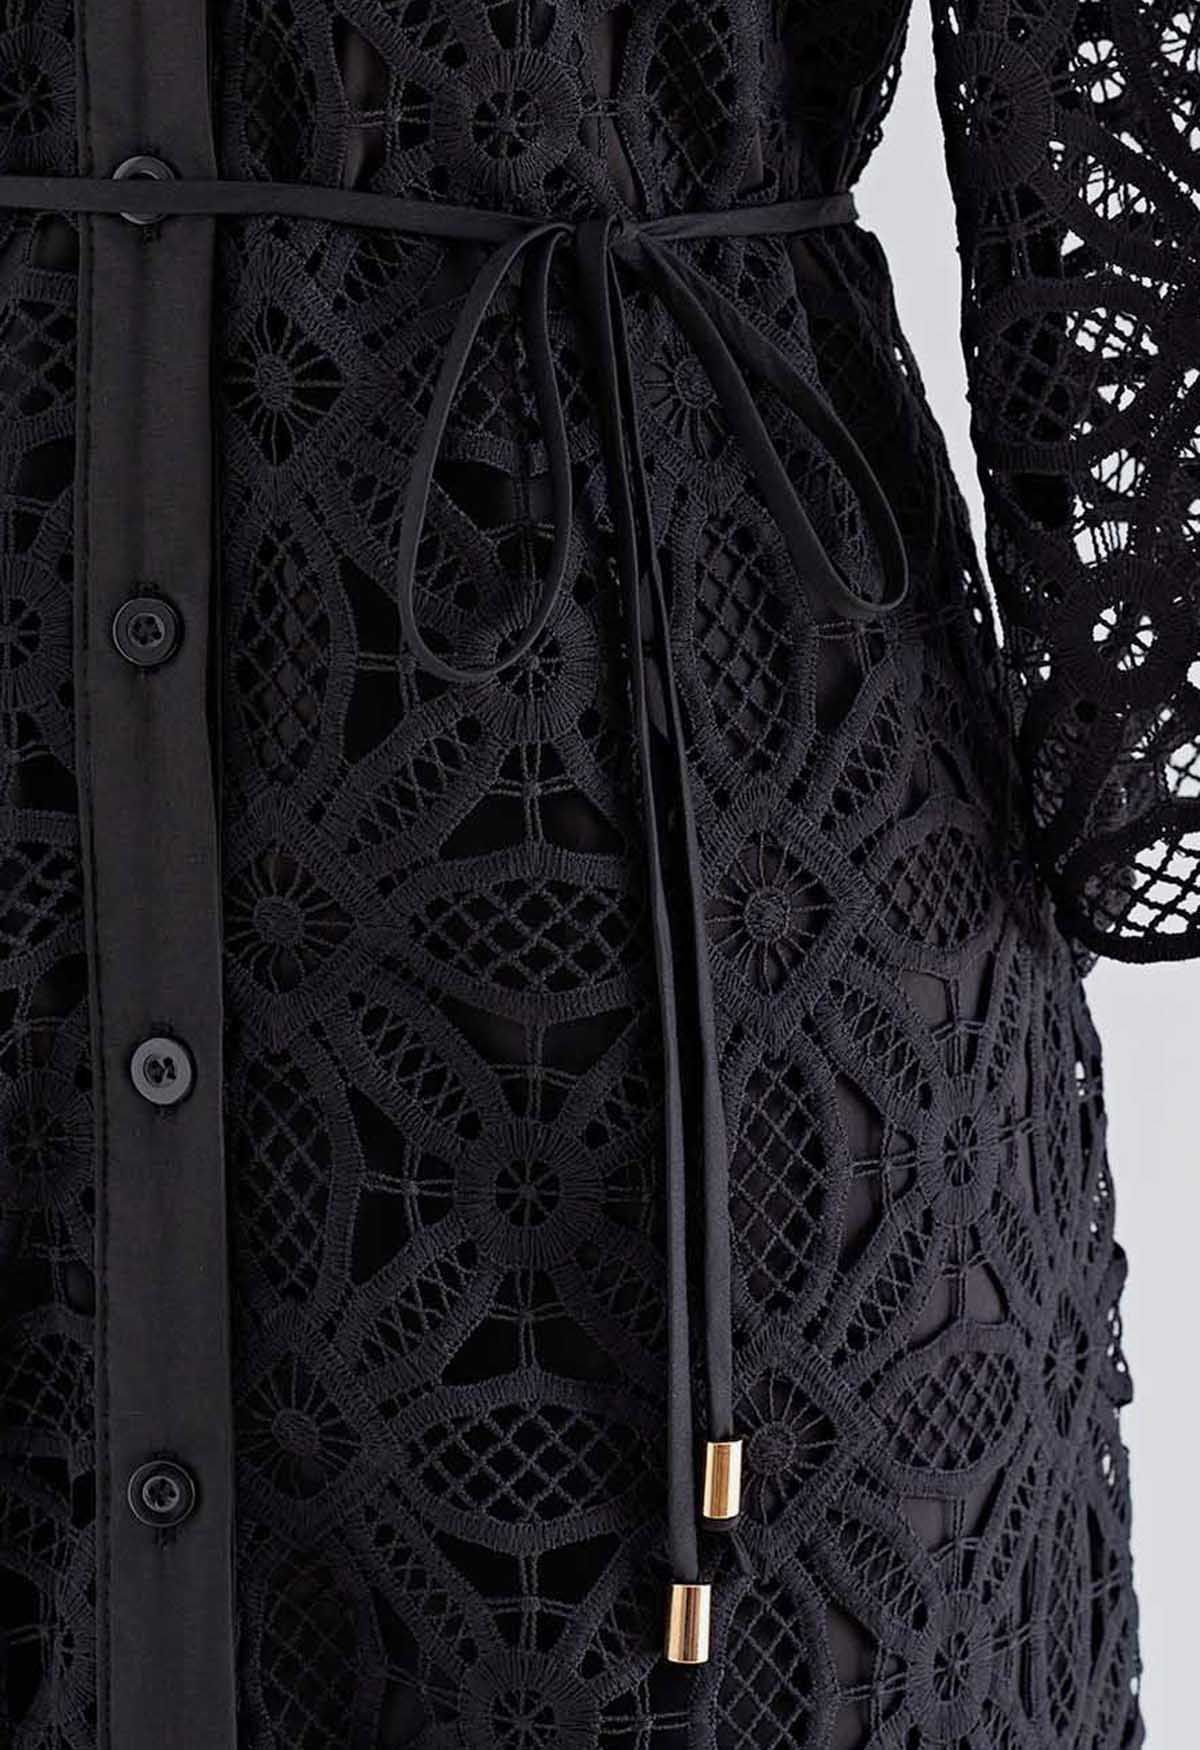 Robe boutonnée en dentelle à découpes délicates en noir